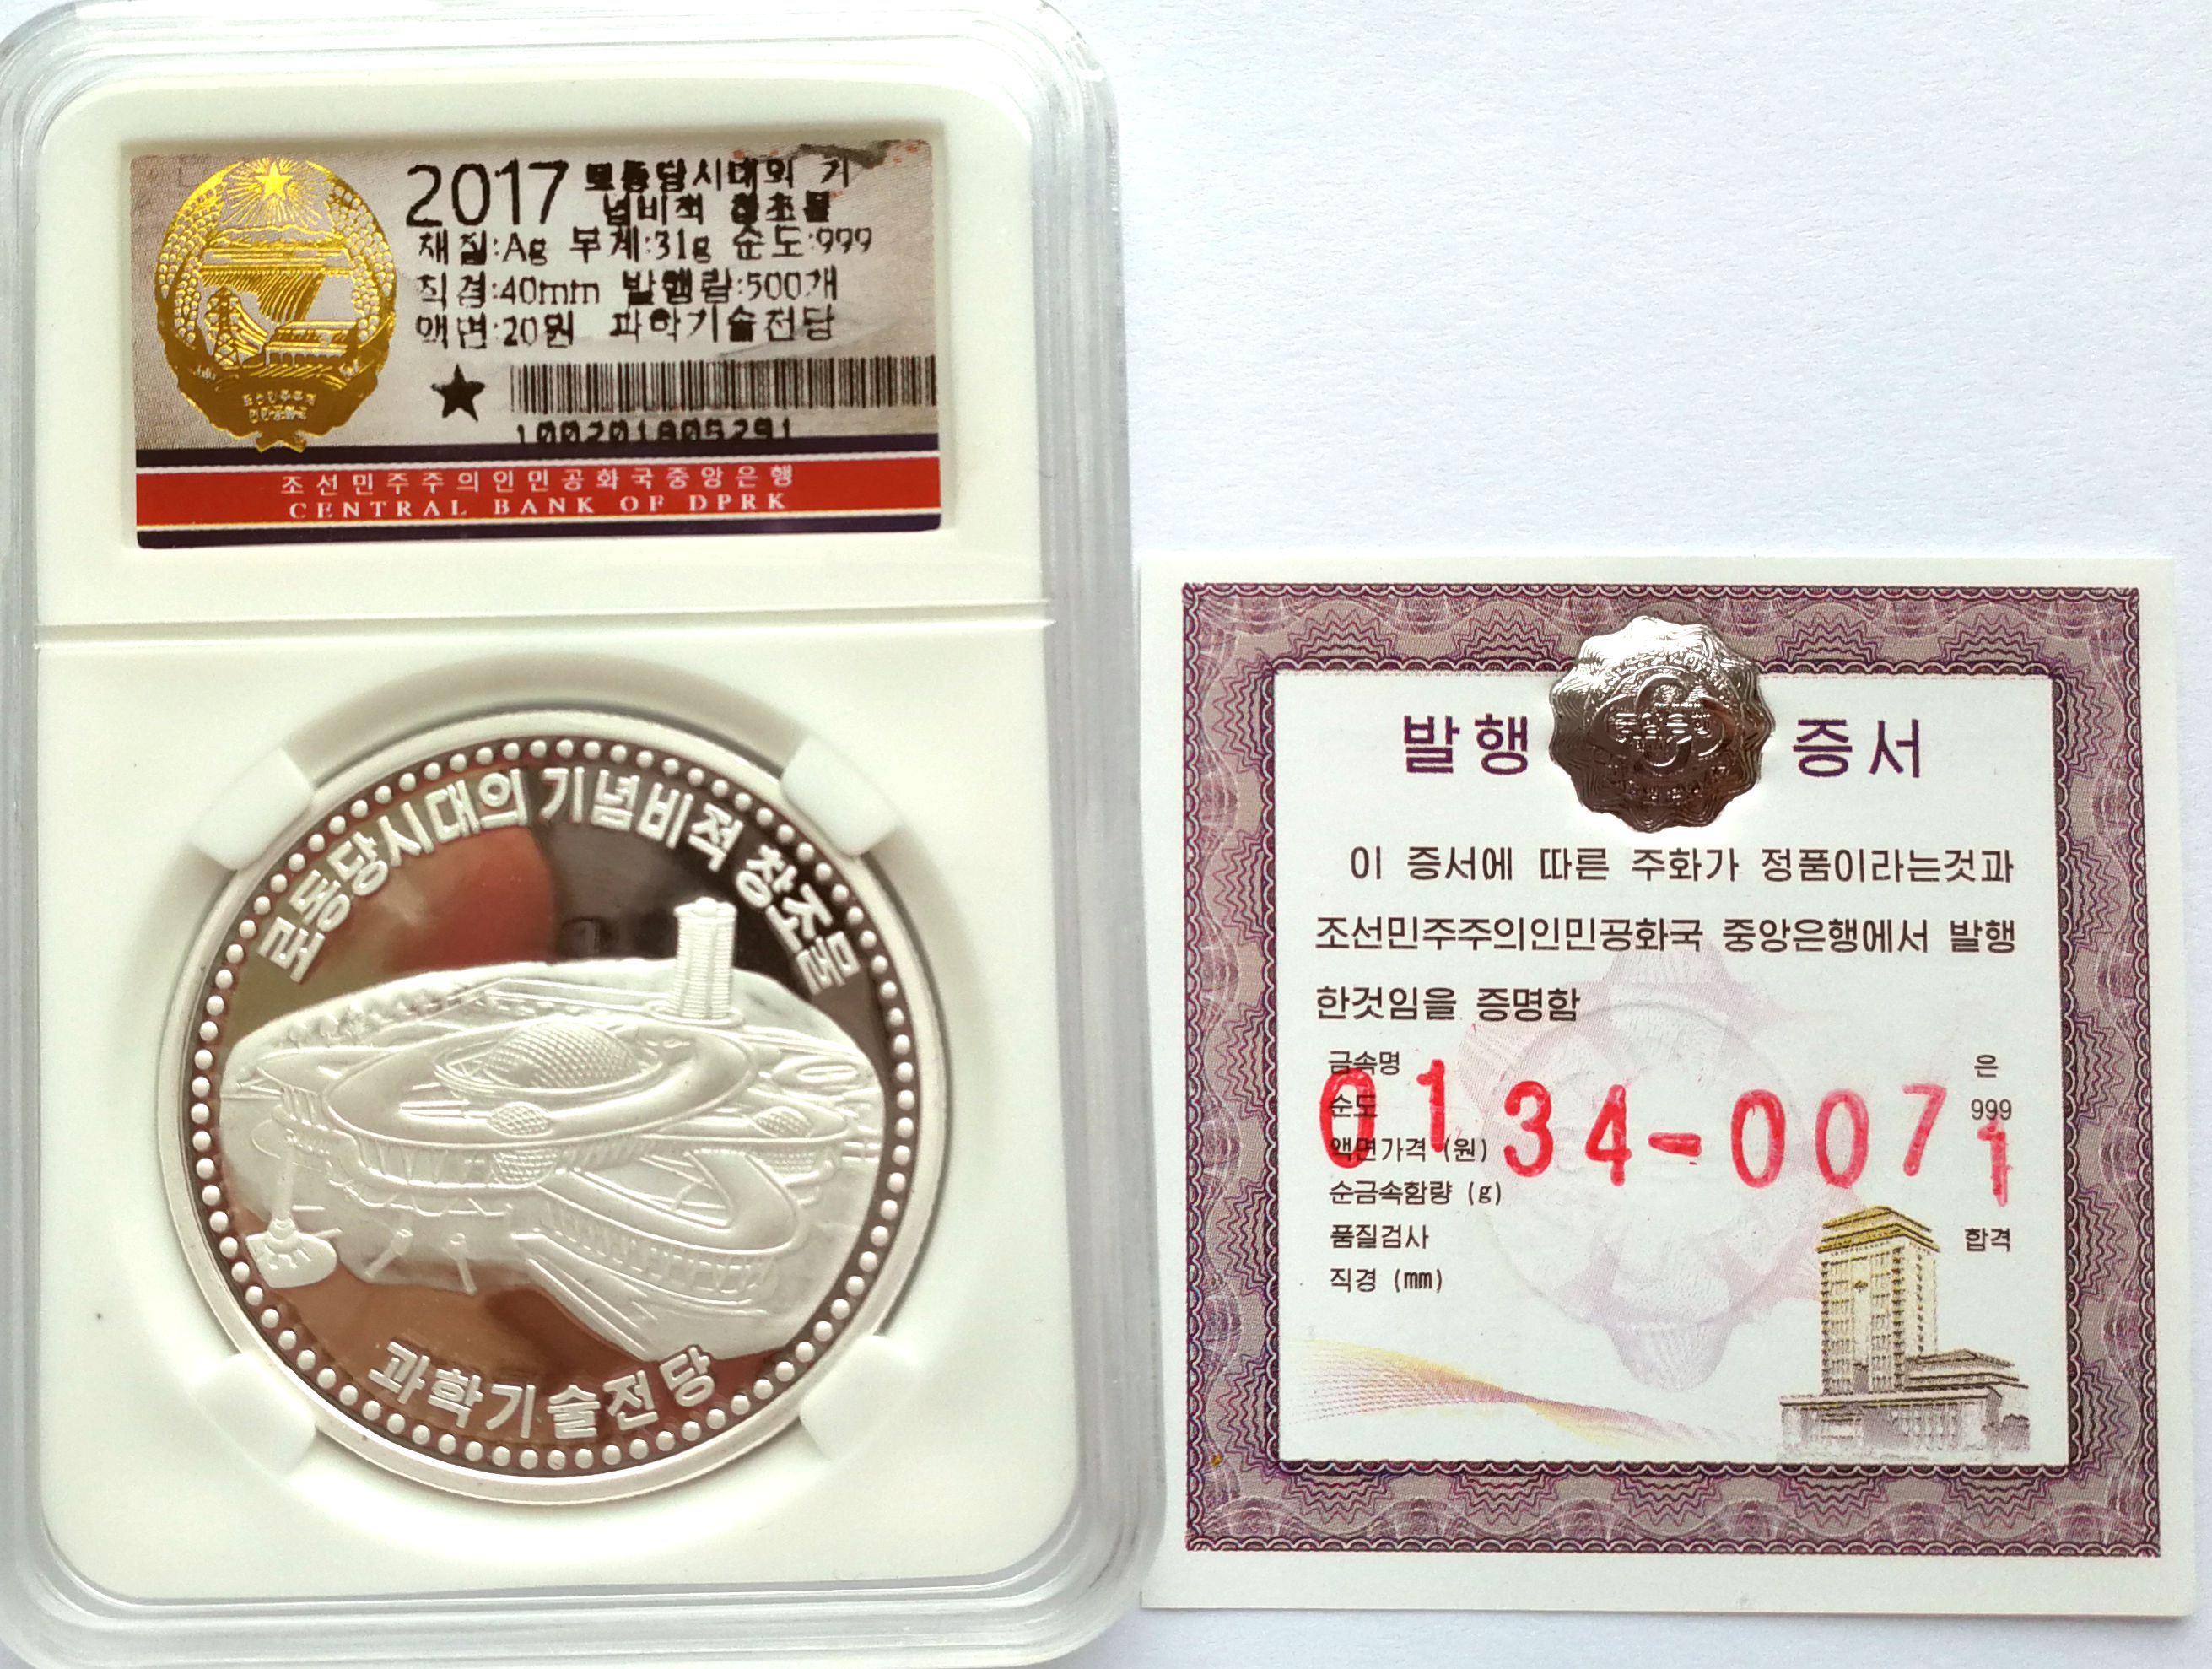 L3572, Korea Proof Silver Coin "Sci-Tech Complex" 2017, Korean Grade - Click Image to Close